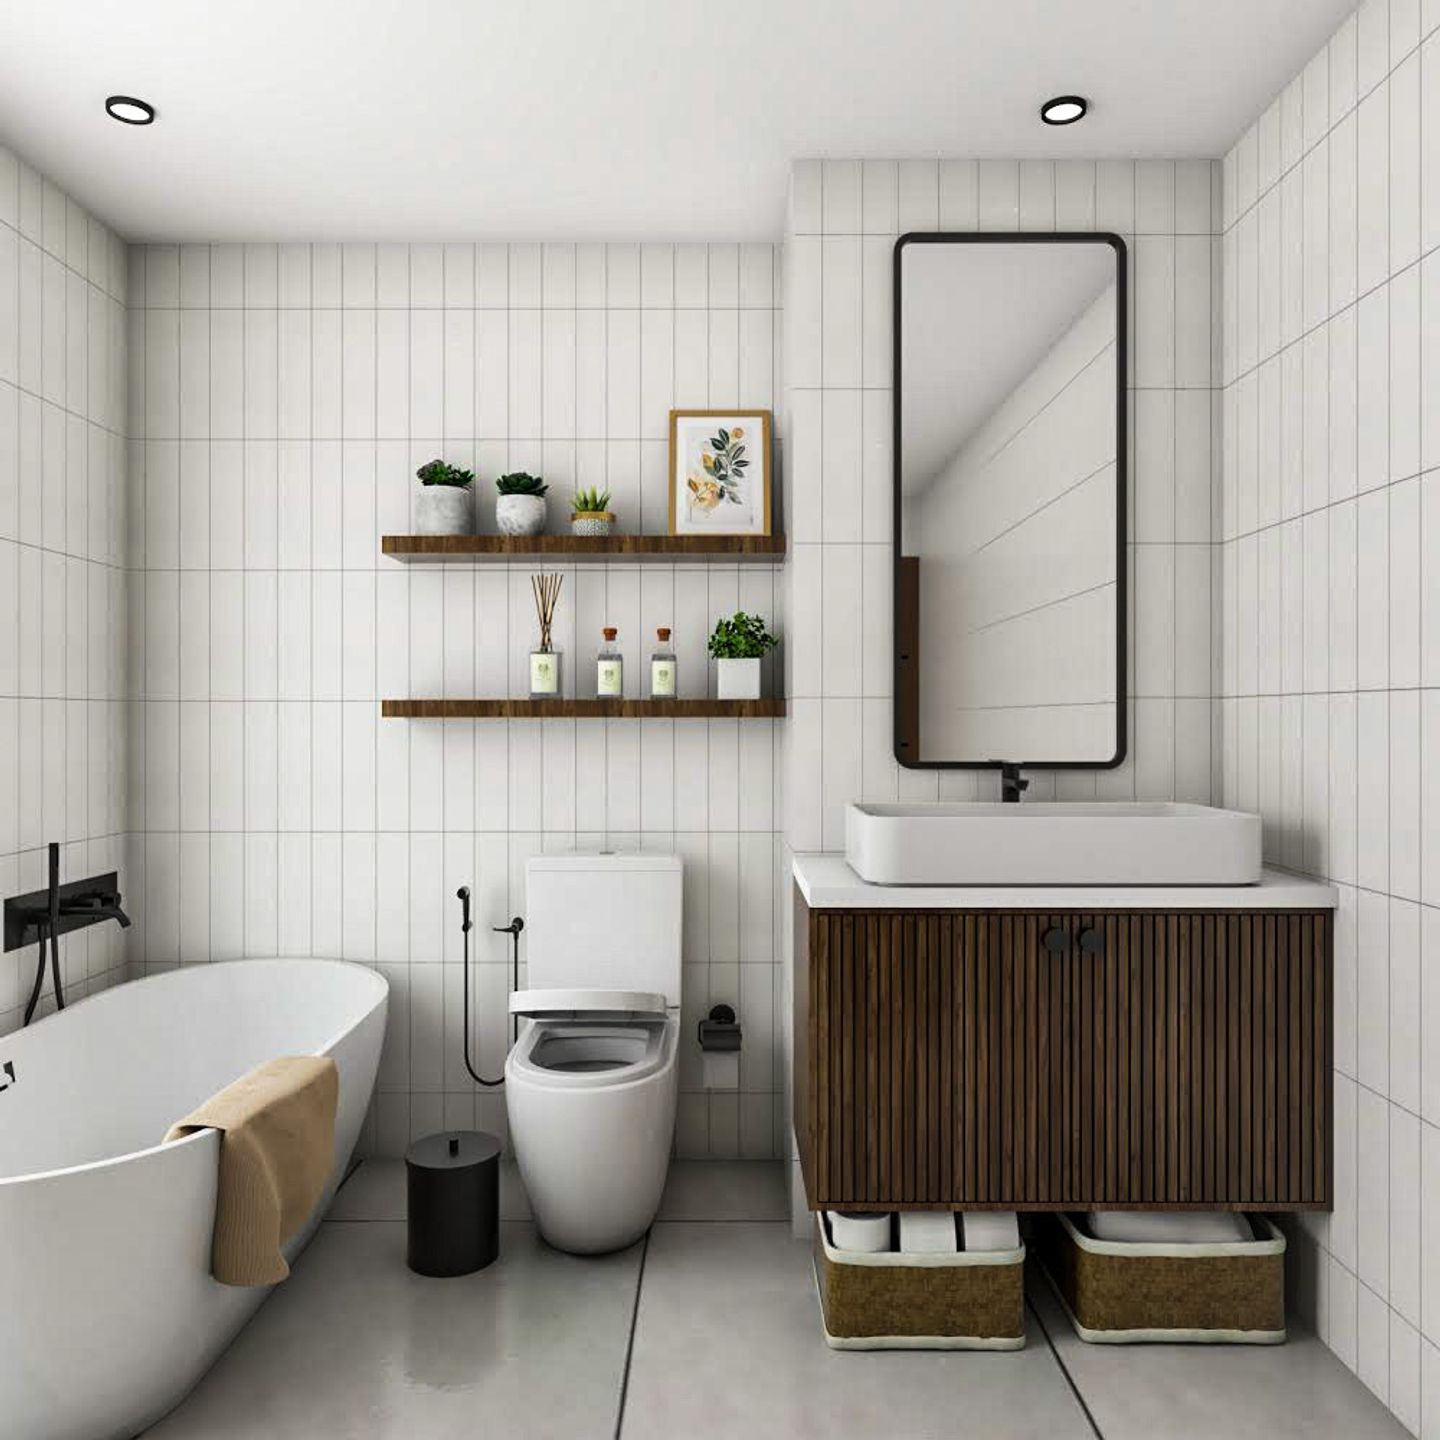 White Bathroom Design With Suede Laminates - Livspace